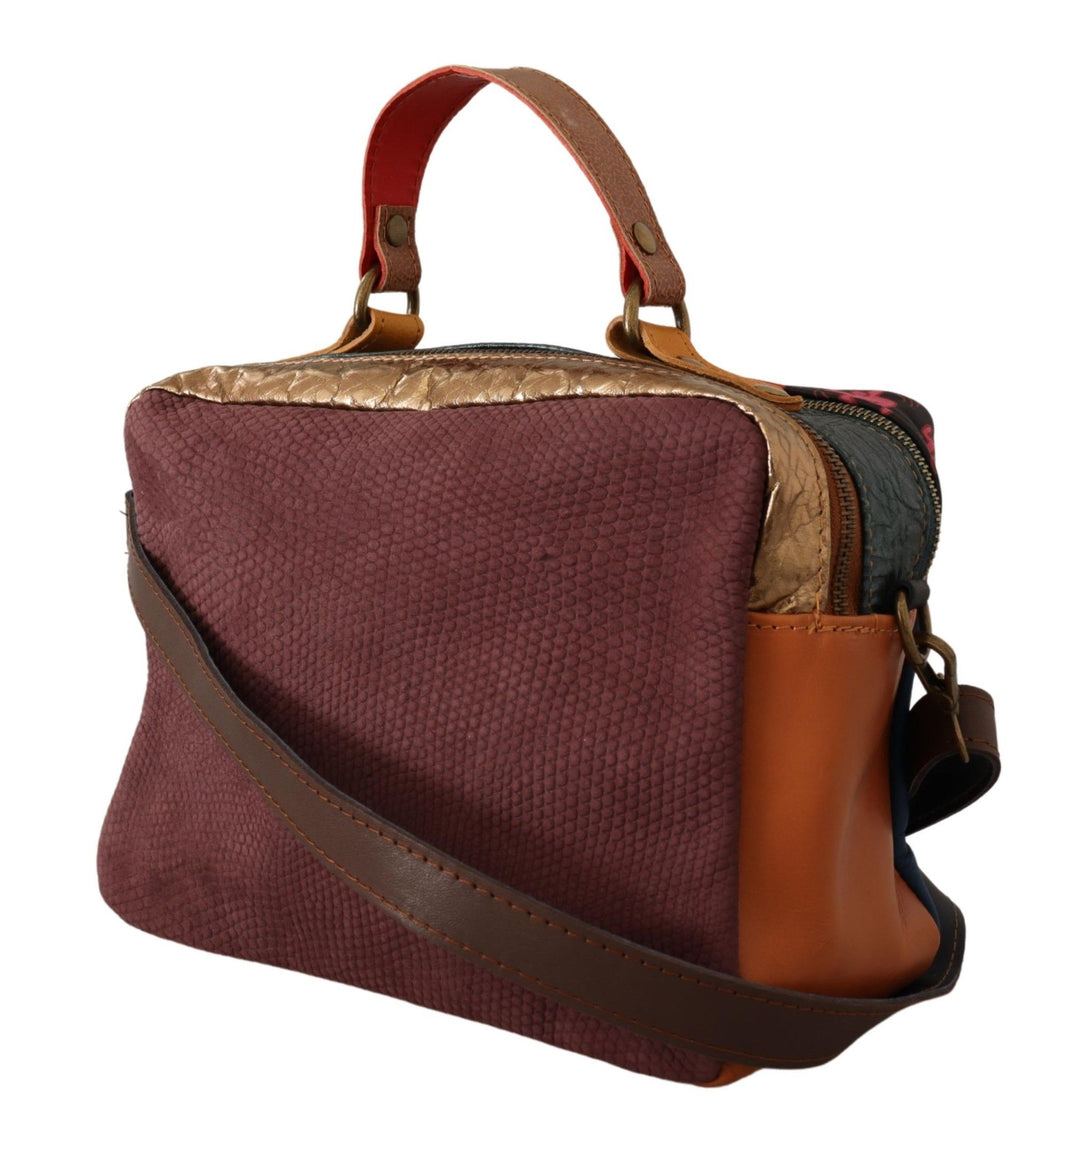 EBARRITO Multicolor Leather Shoulder Bag with Gold Details